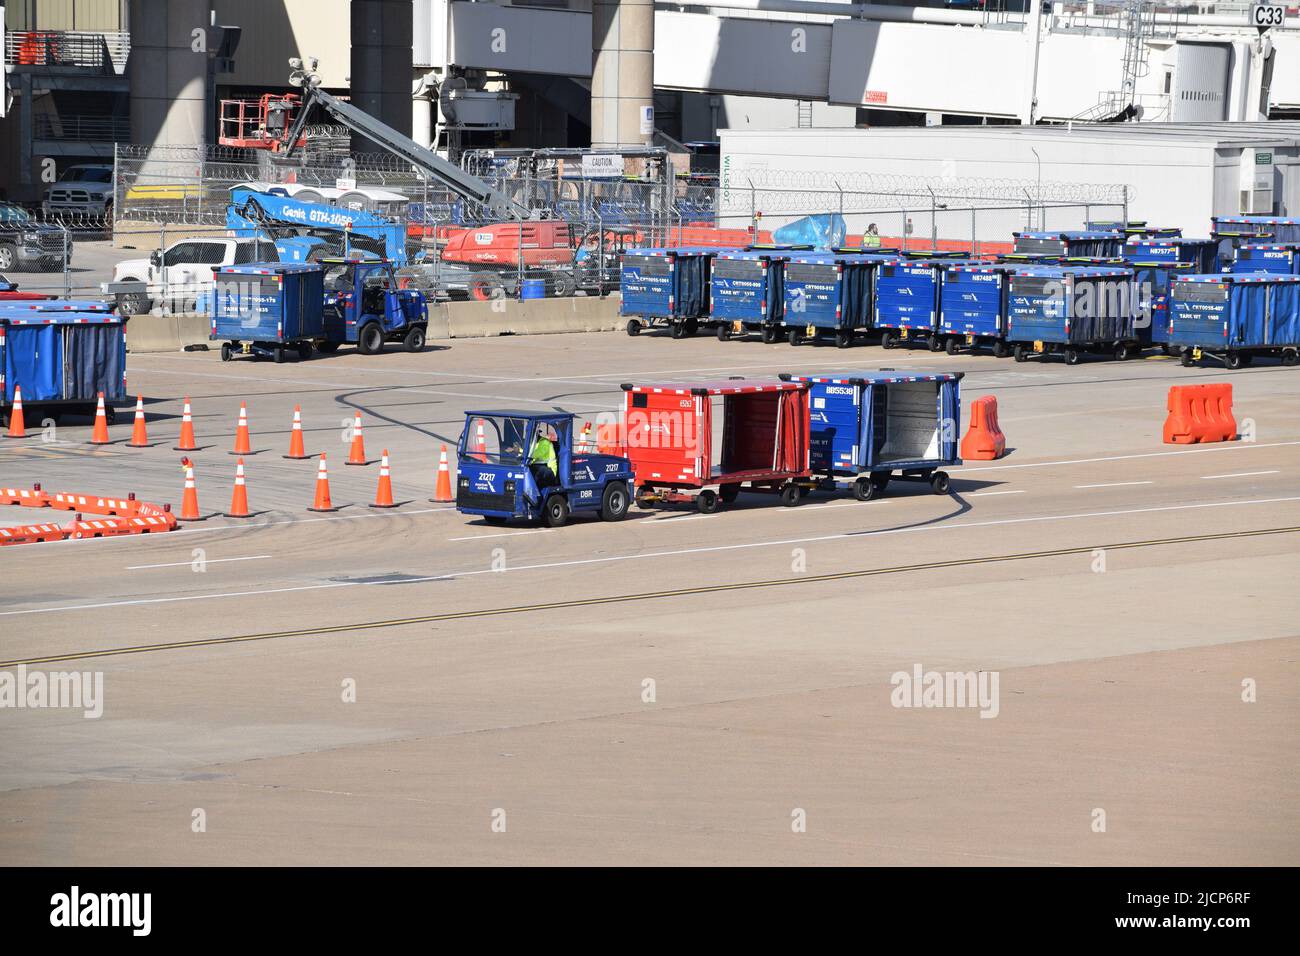 Una rampa de American Airlines presta servicios a un trabajador que conduce un tractor tirando de carros de equipaje fuera de la Terminal C en el Aeropuerto DFW (Aeropuerto Dallas-Fort Worth) Foto de stock